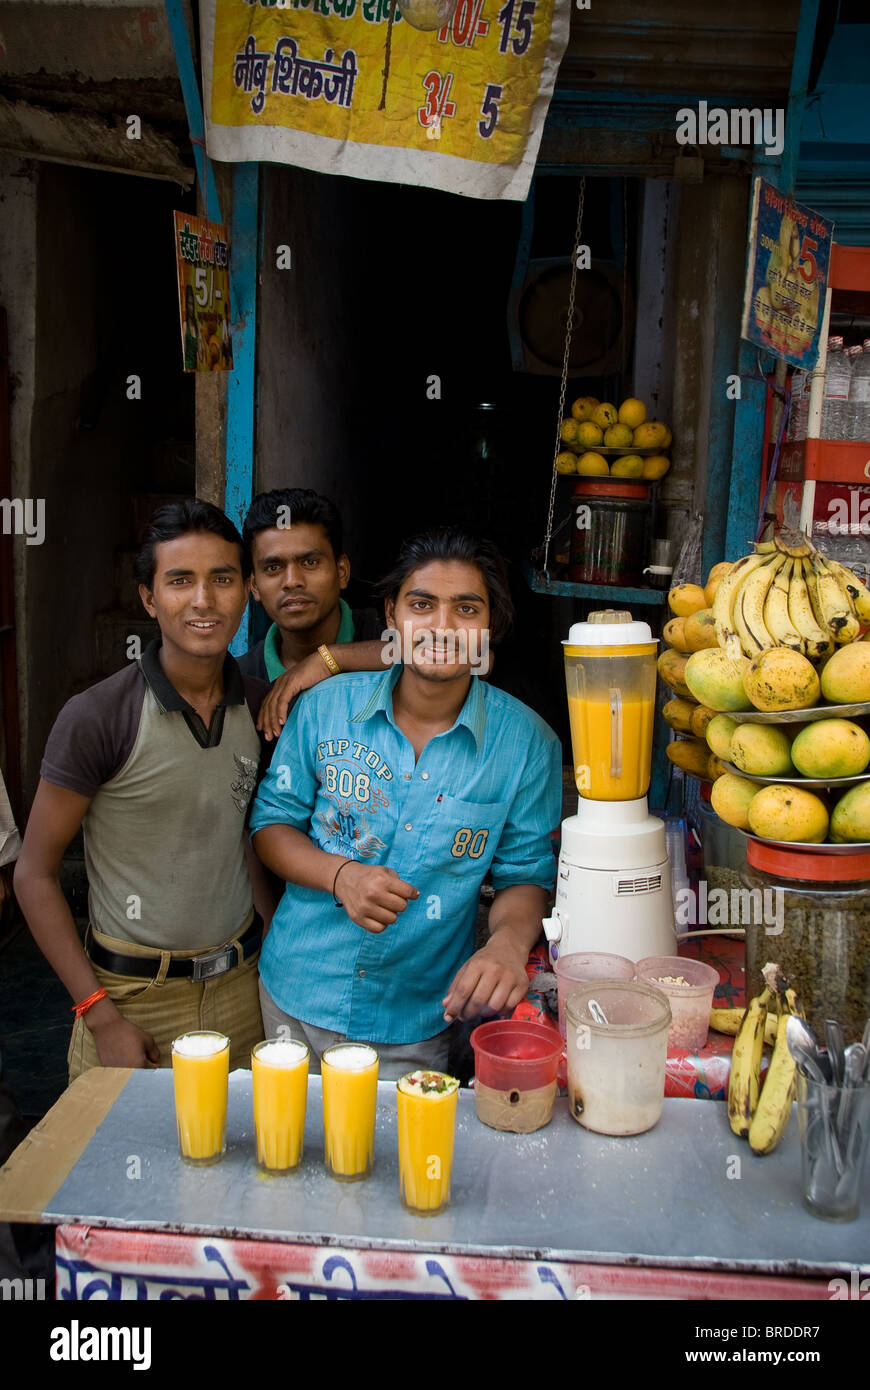 La rue du marché de commerçants vendant lassi à la Mangue dans la région de Old Delhi, Inde Banque D'Images